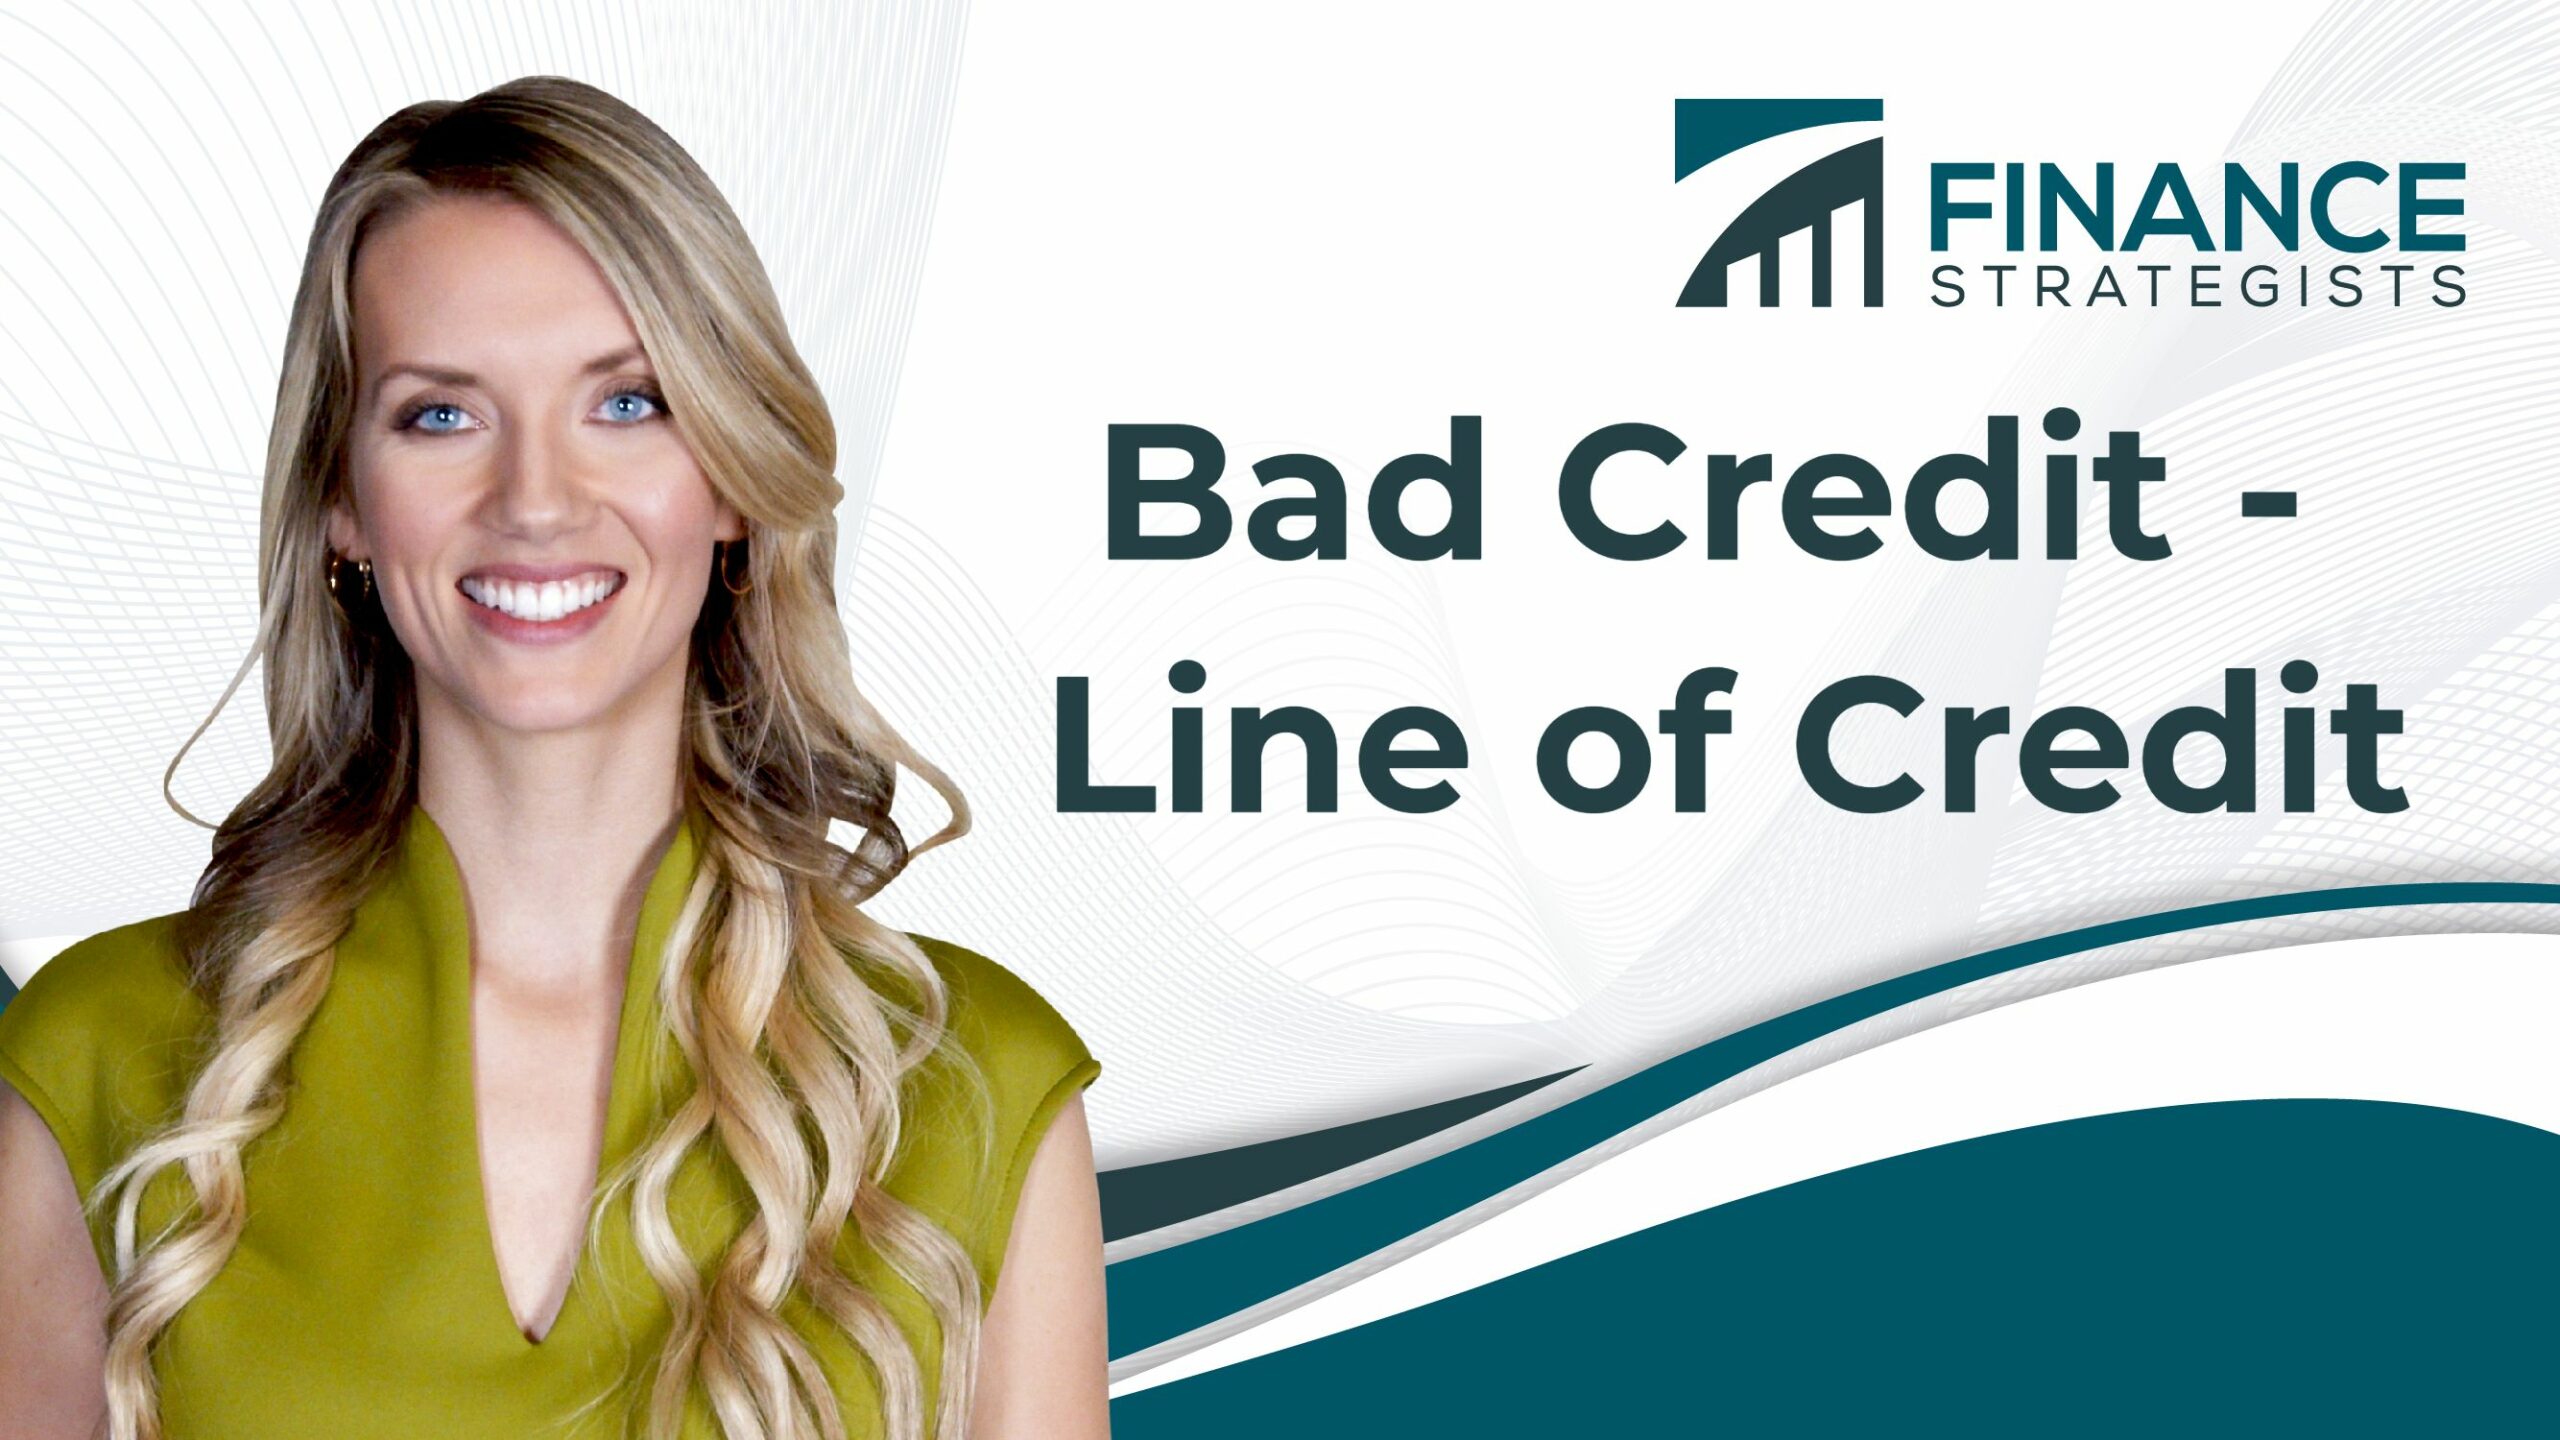 Bad Credit - Line of Credit | Finance Strategists